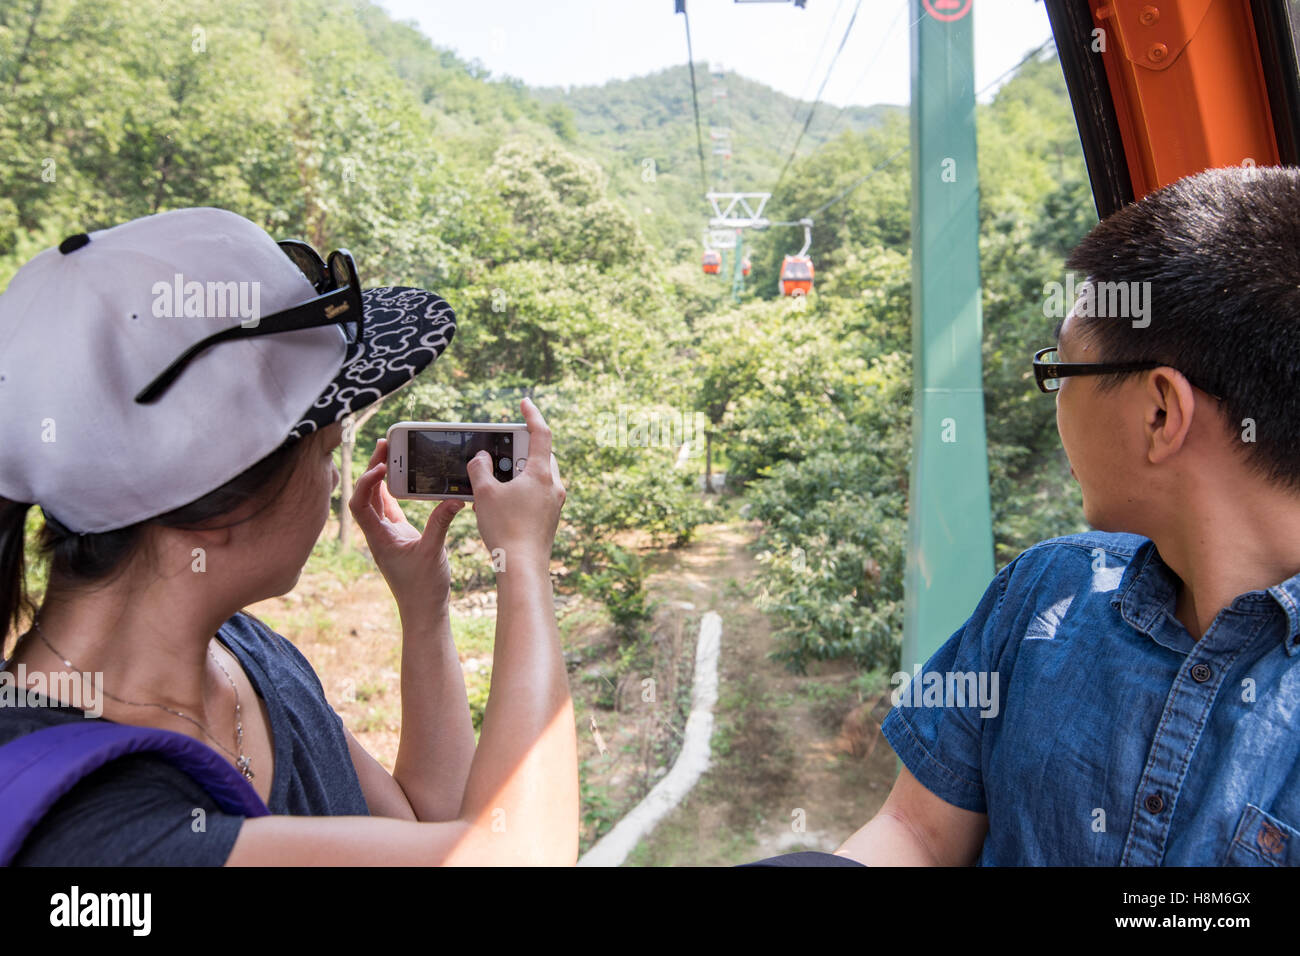 Mutianyu, Cina - i turisti fotografare sui loro telefoni cellulari durante la guida la seggiovia fino alla Grande Muraglia Cinese. Il wal Foto Stock